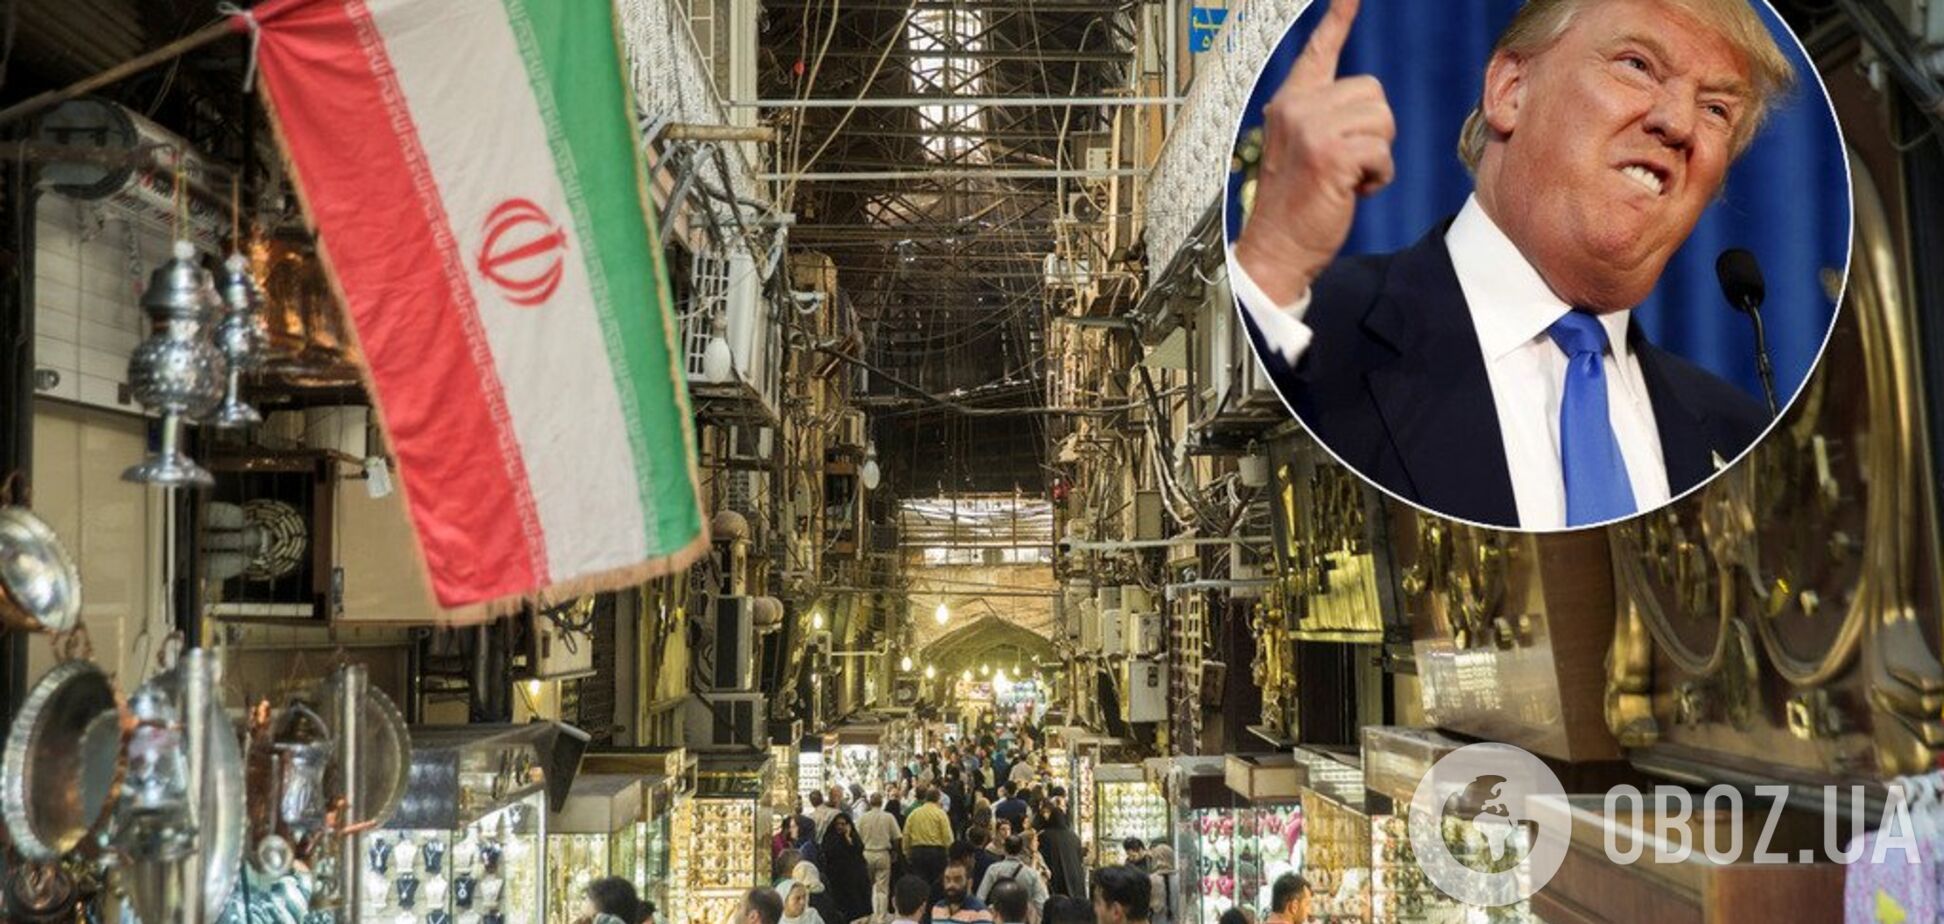 'Готові укласти мир': Трамп відреагував на нові санкції проти Ірану